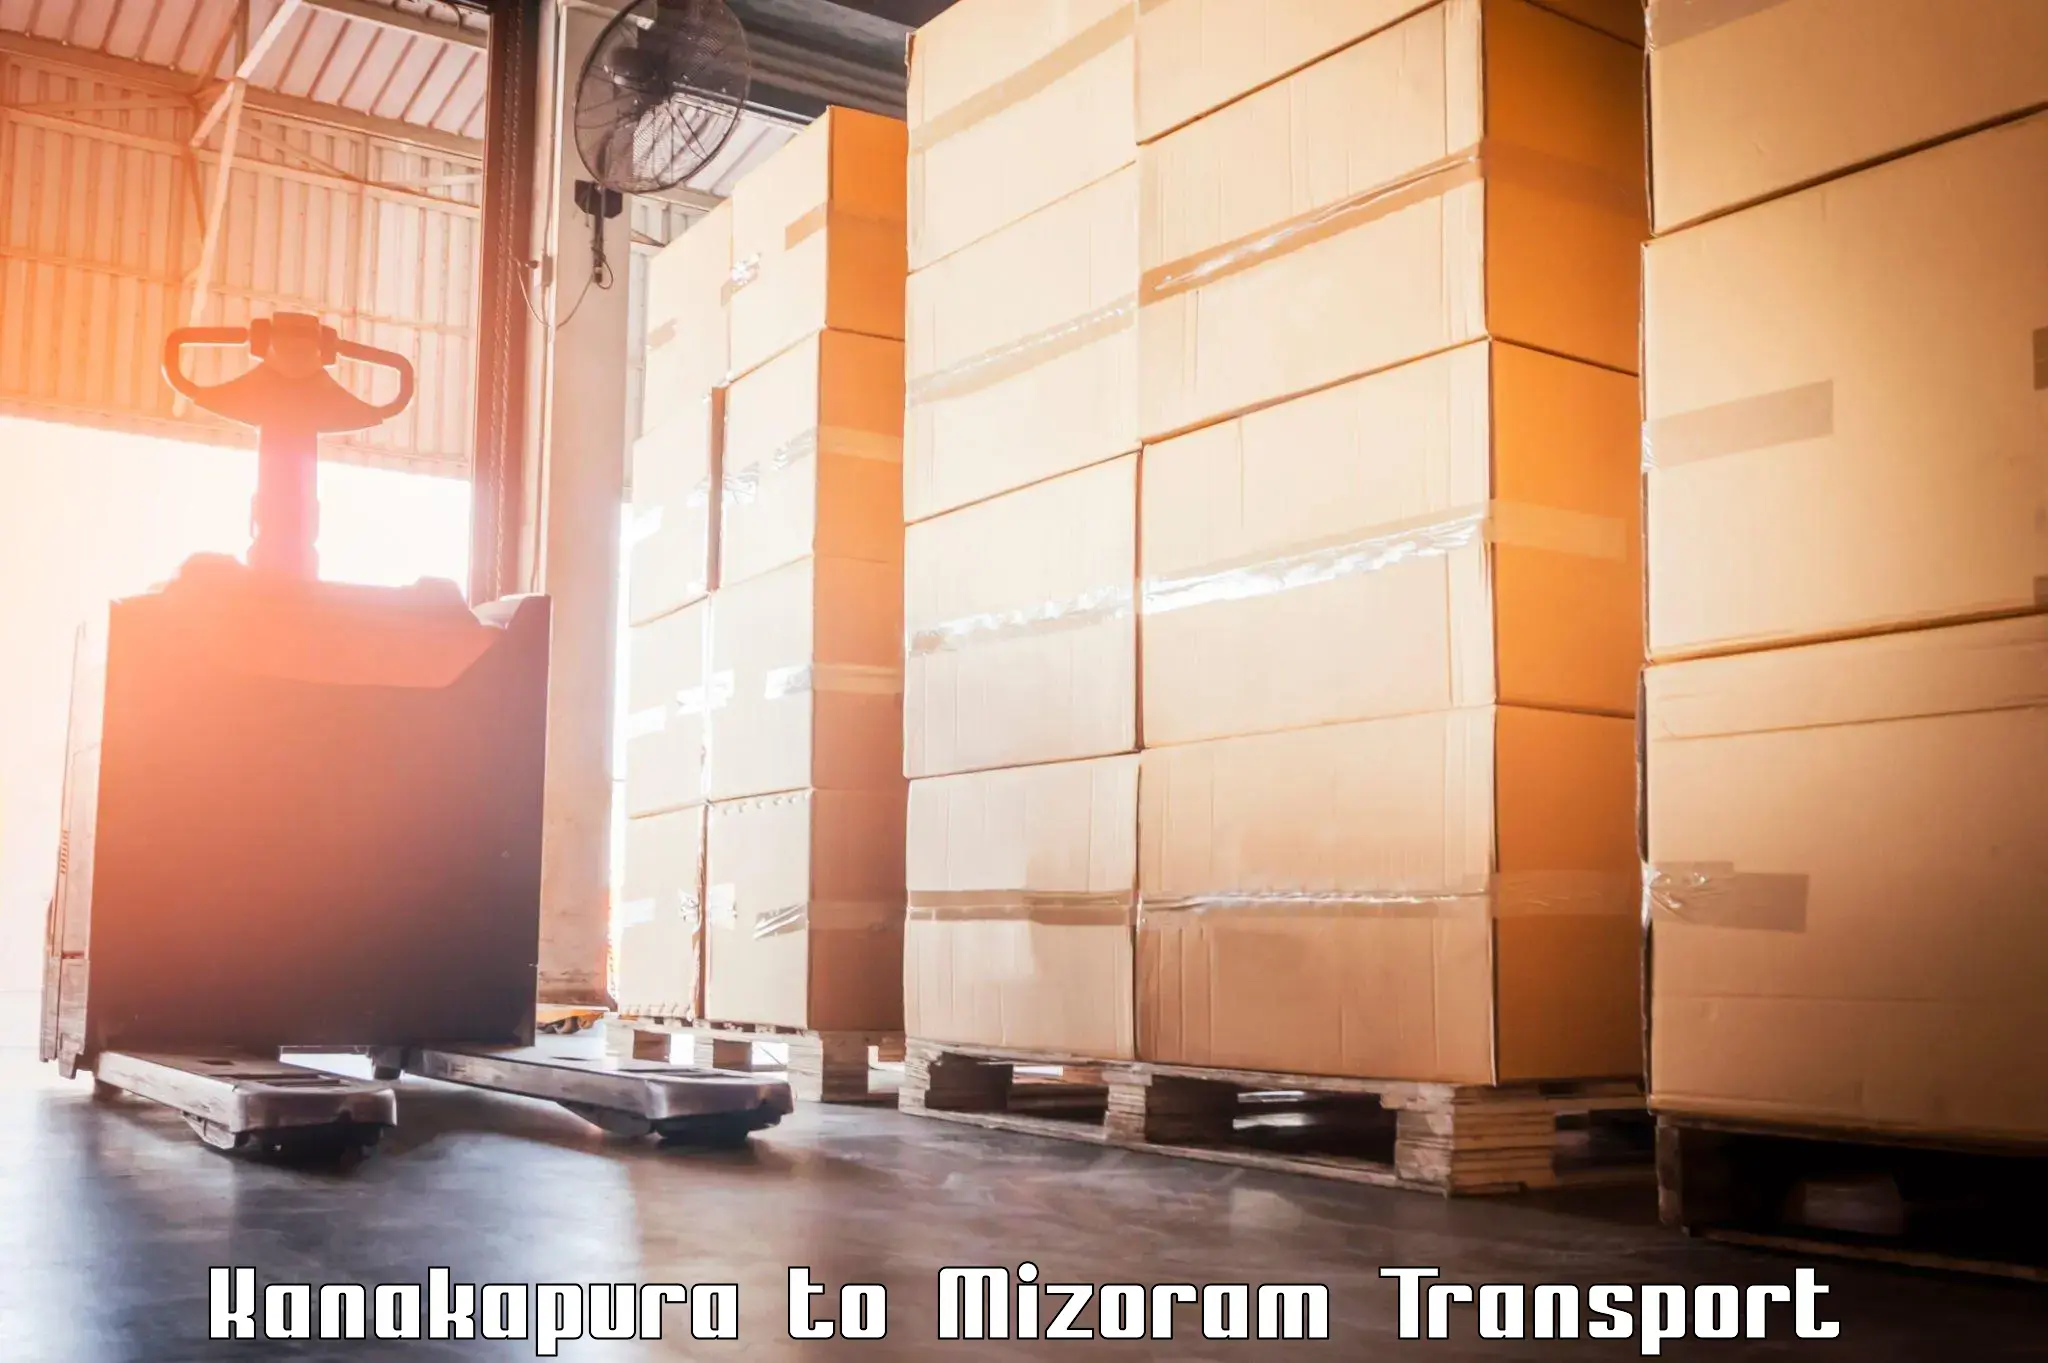 Air cargo transport services Kanakapura to Mizoram